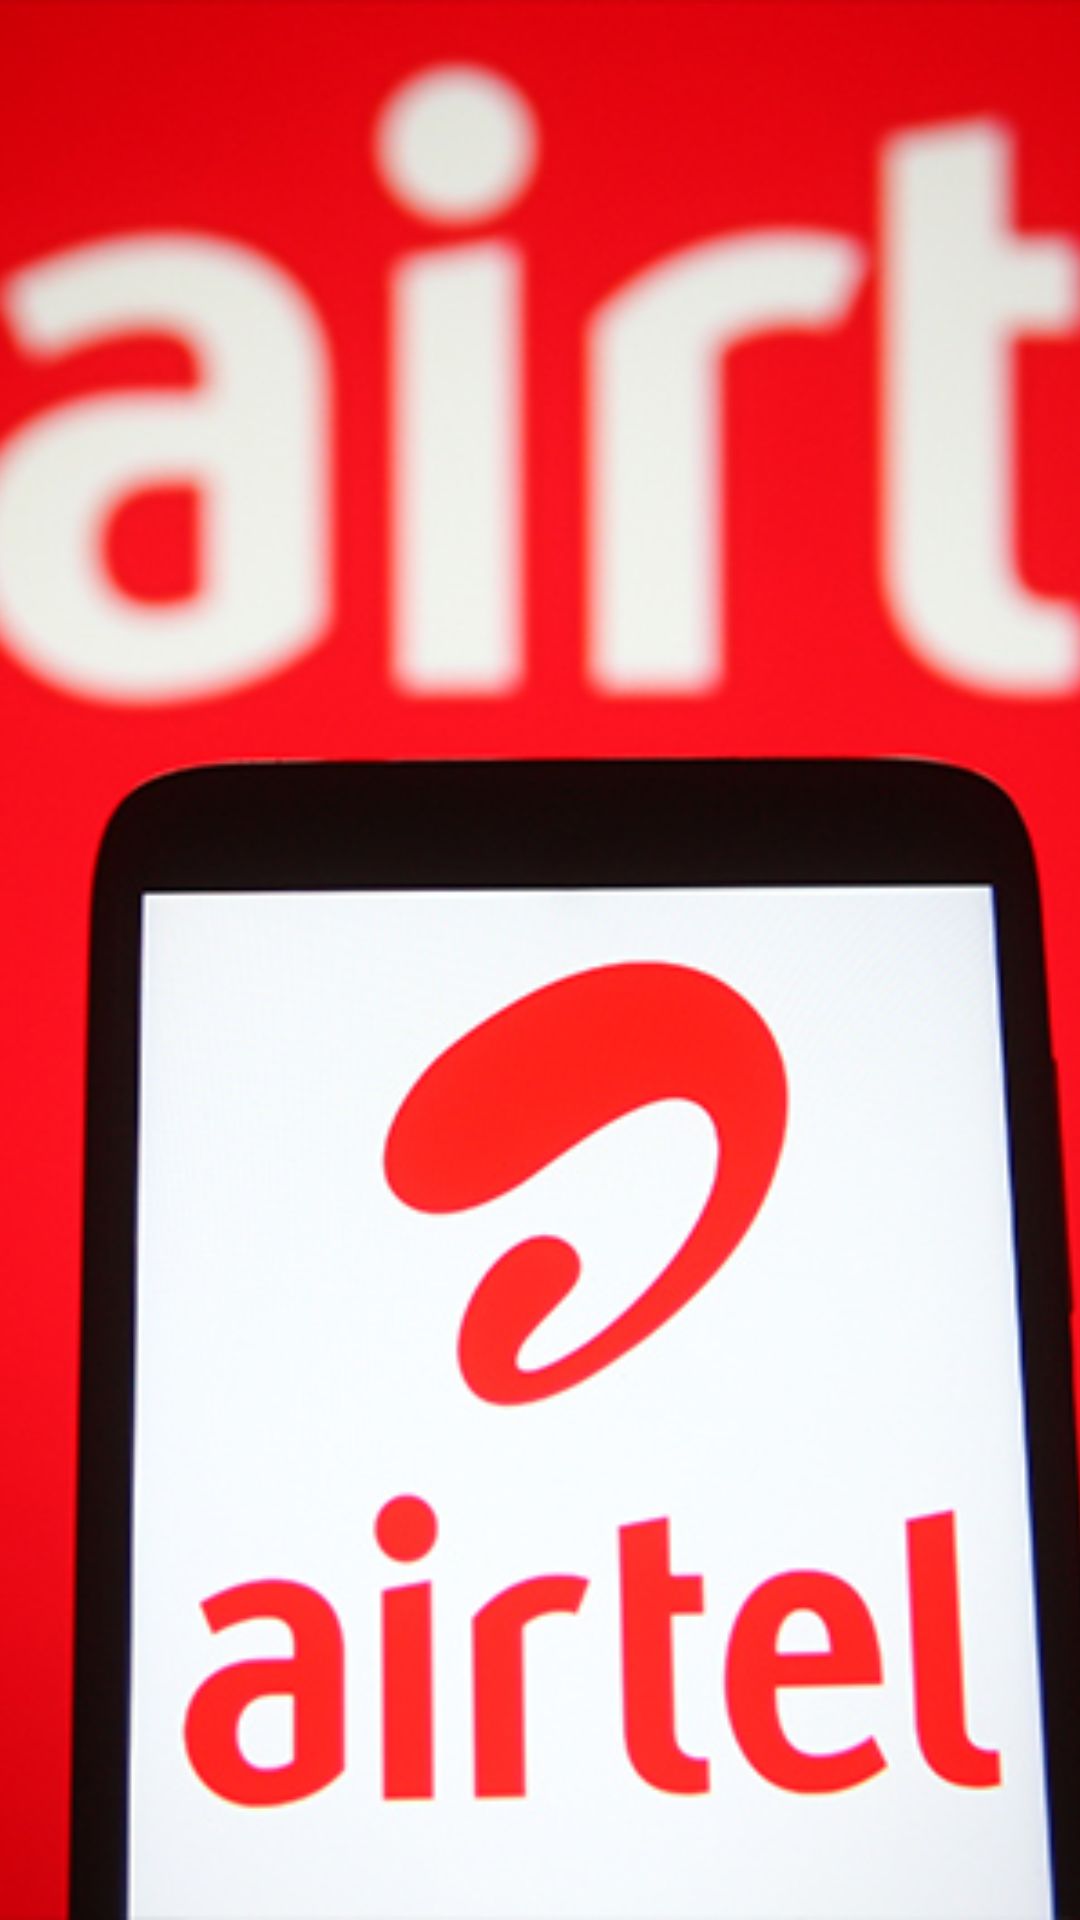 Airtel दे रहा है 19 रुपये में 5G नेटवर्क, जानें टर्म &amp; कंडीशन 